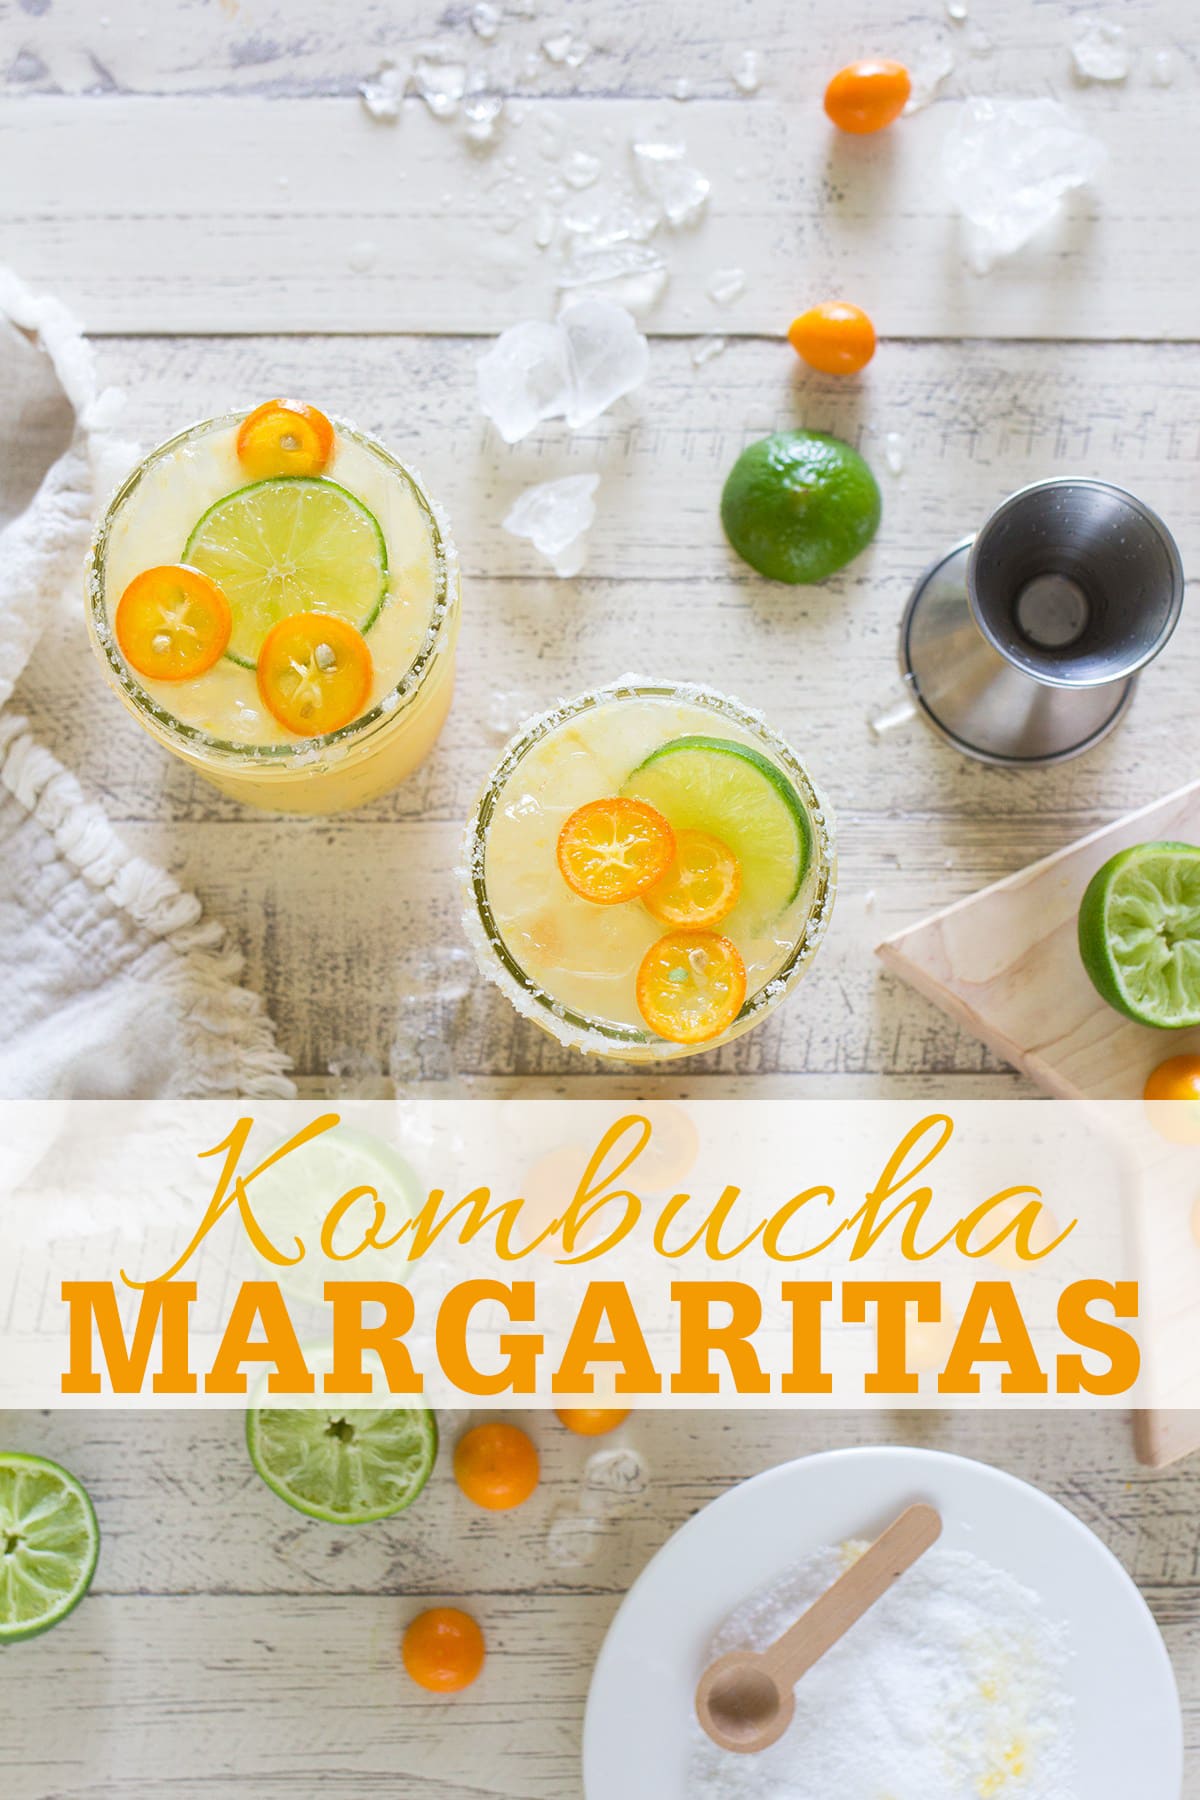 Kumquat Kombucha Margarita